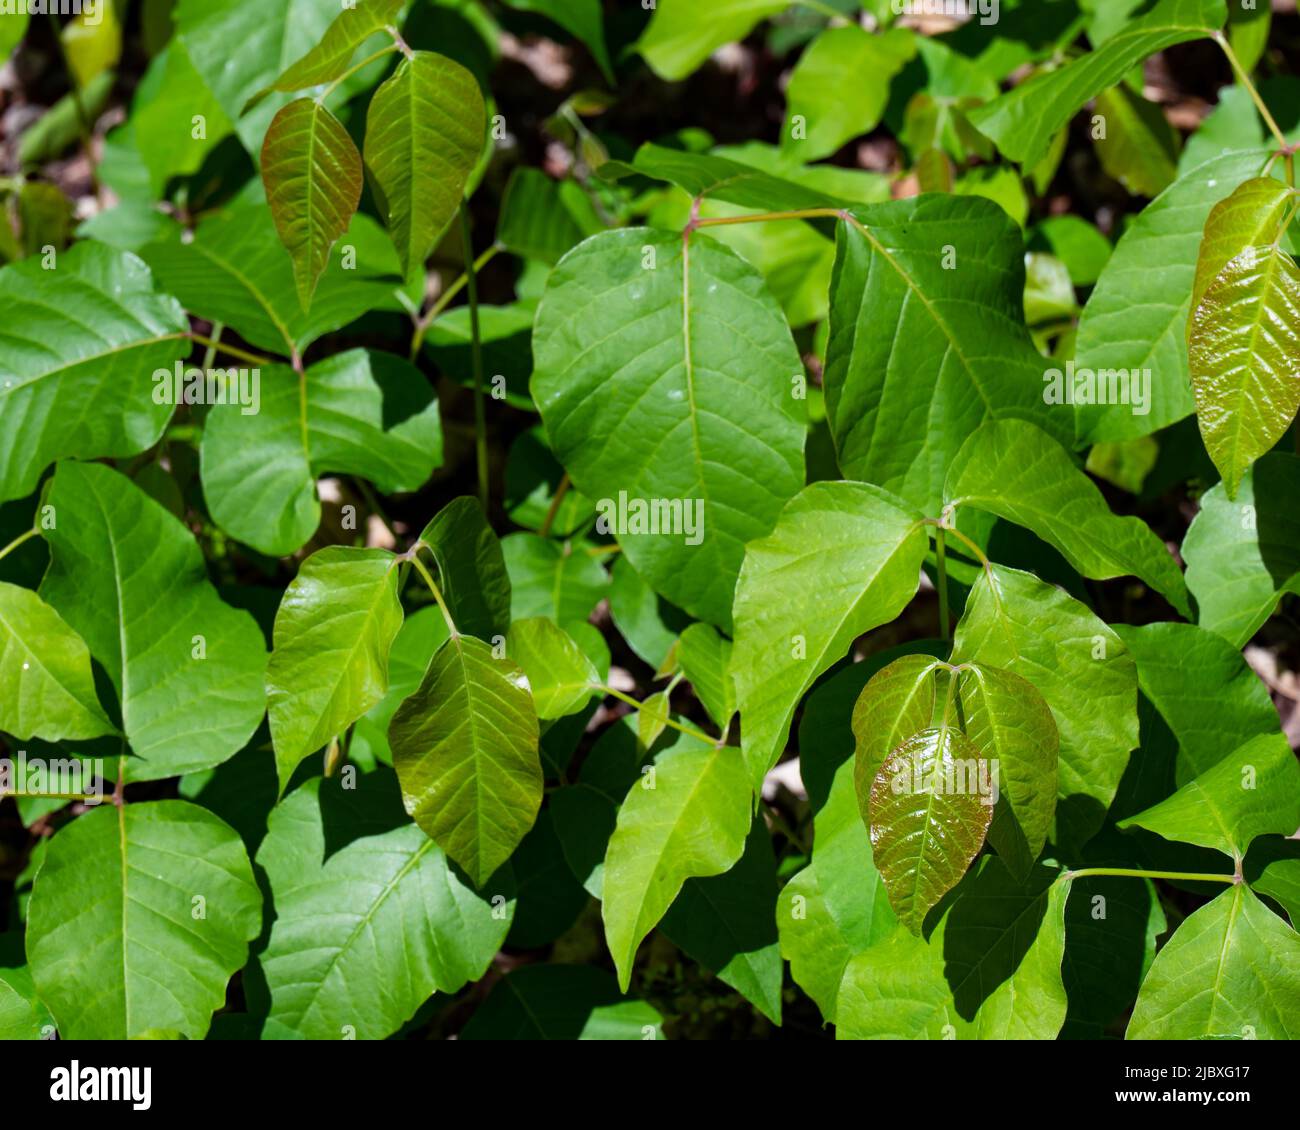 Un parche de hiedra venenosa, una planta alergénica, Toxicodendron radicans, que crece en las Montañas Adirondack, NY EE.UU. Causando dermatitis por contacto Foto de stock